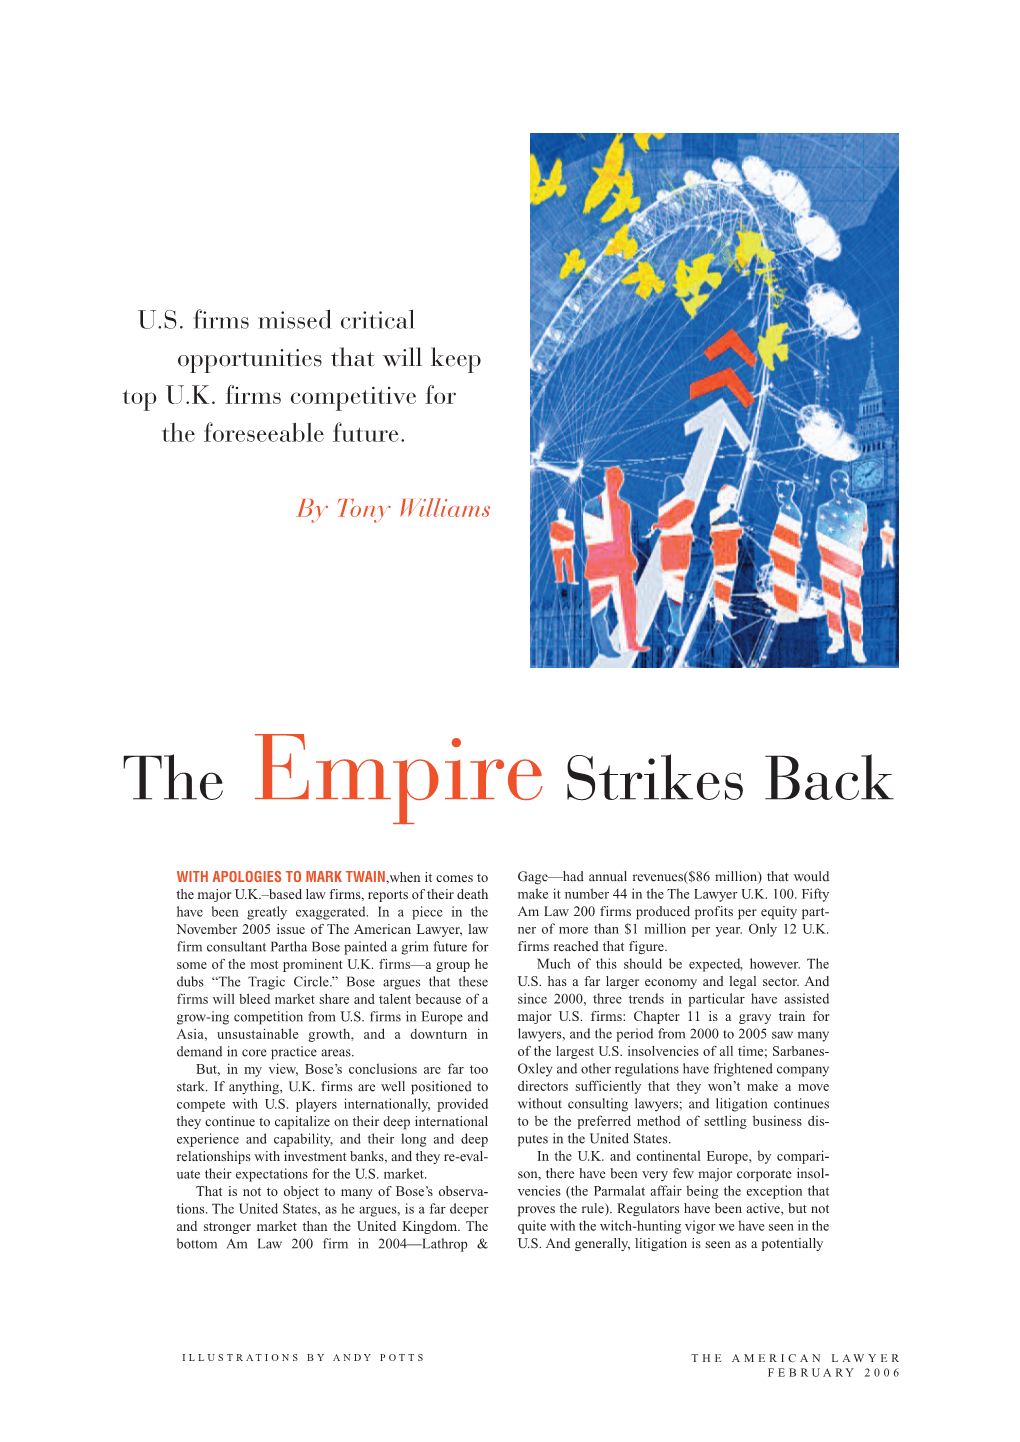 The Empire Strikes Back February 2006 , by Tony